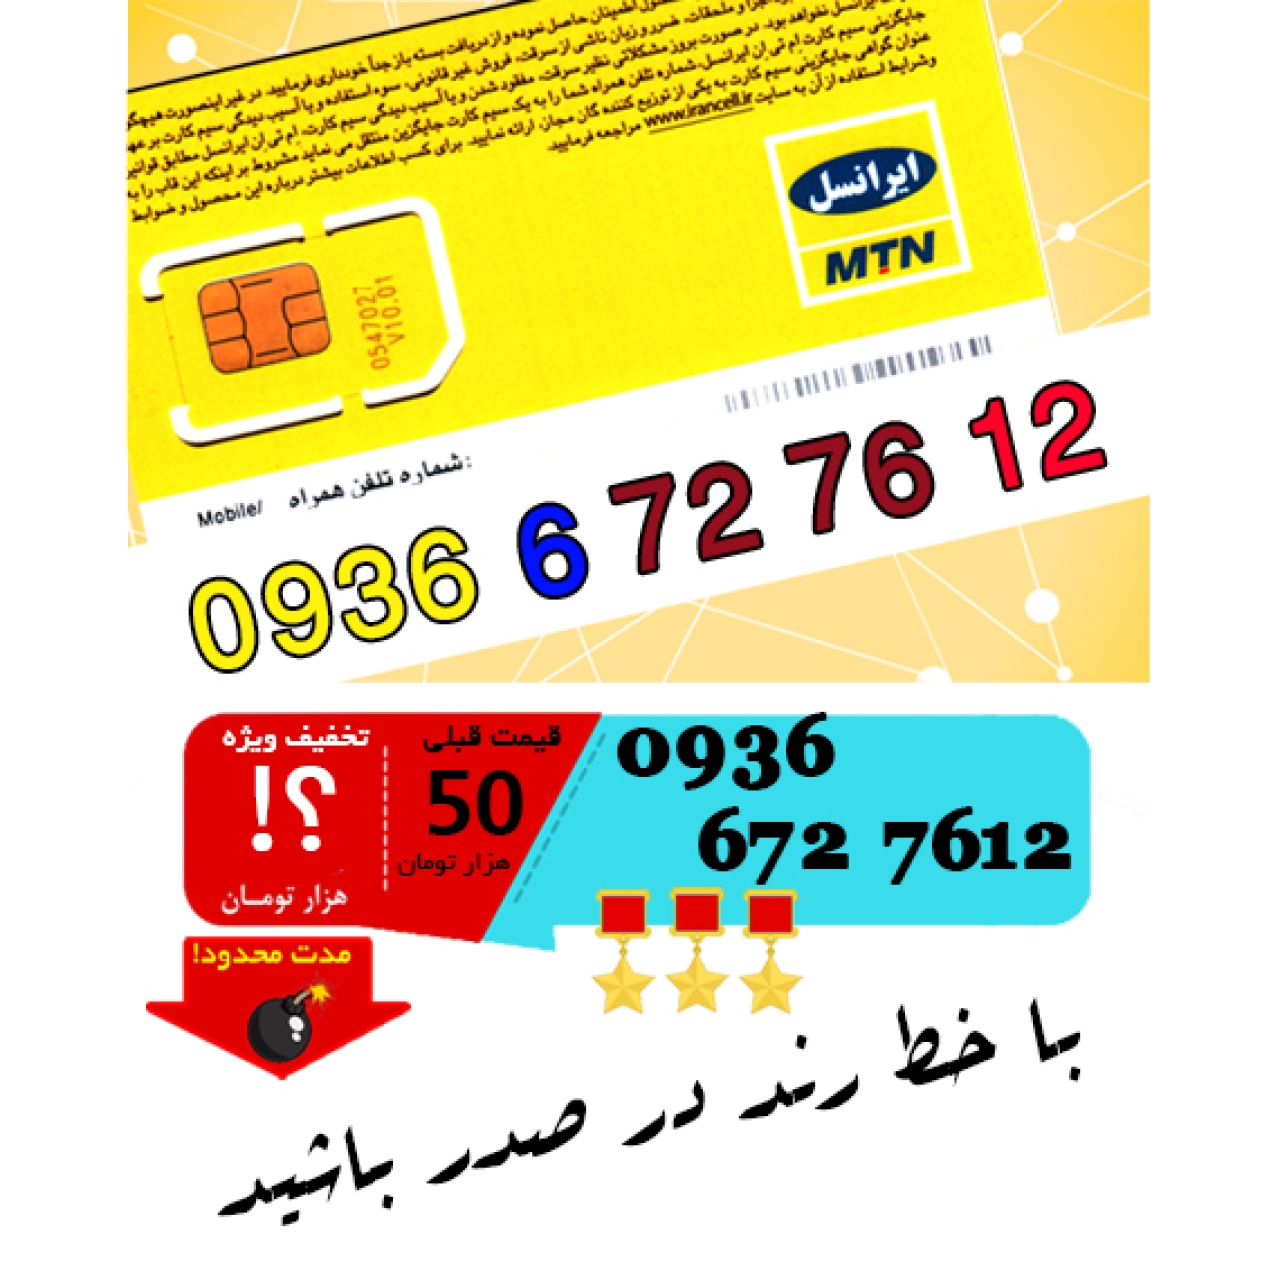 سیم کارت اعتباری ایرانسل 09366727612